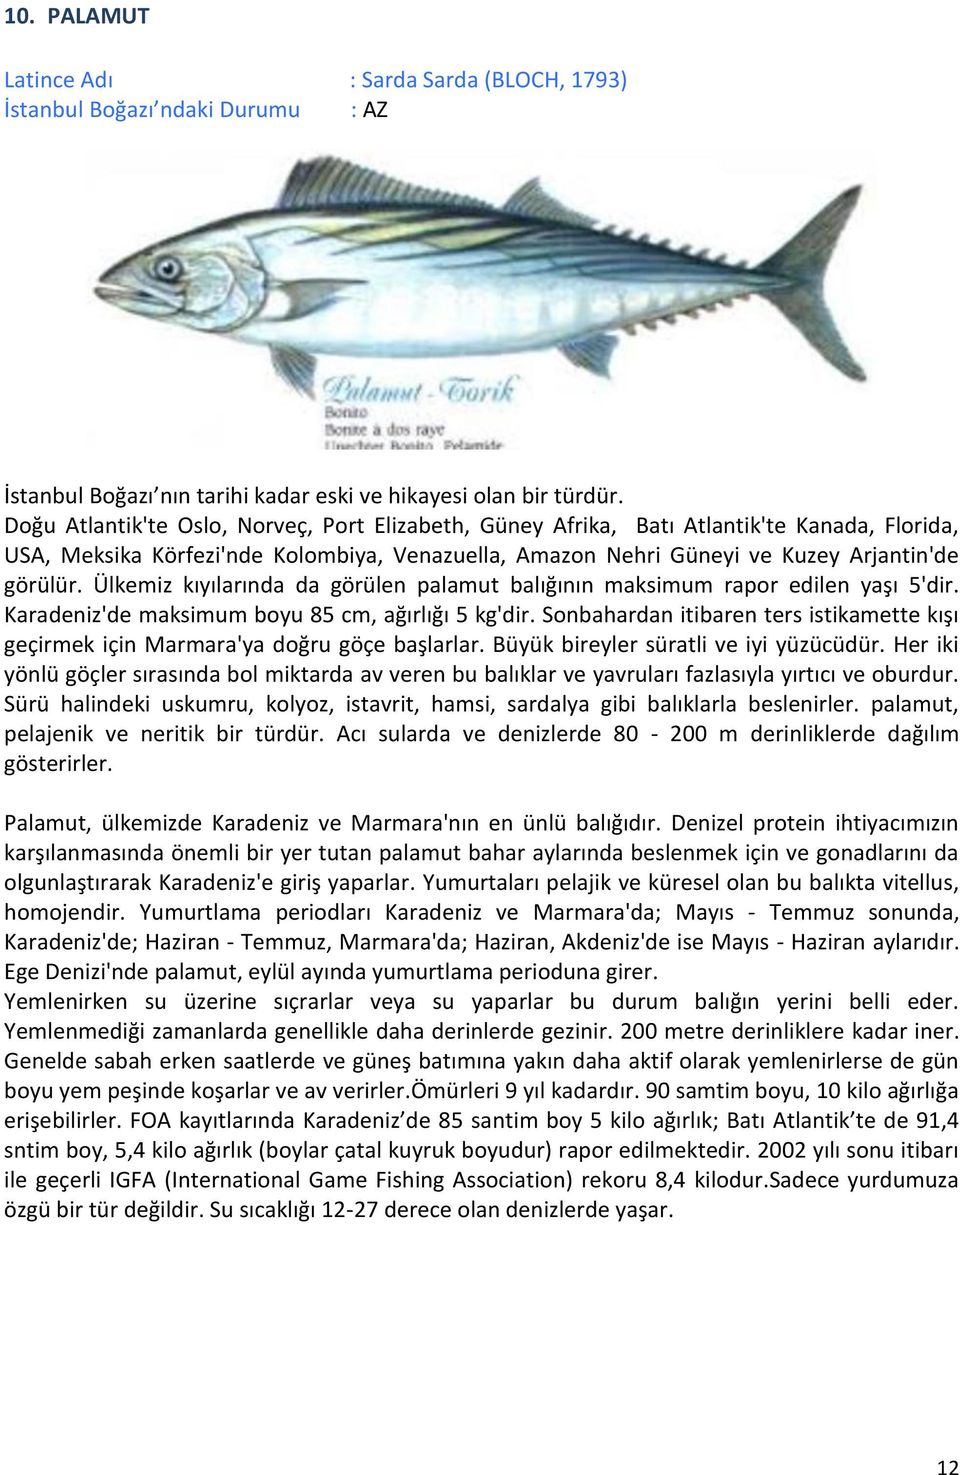 Ülkemiz kıyılarında da görülen palamut balığının maksimum rapor edilen yaşı 5'dir. Karadeniz'de maksimum boyu 85 cm, ağırlığı 5 kg'dir.